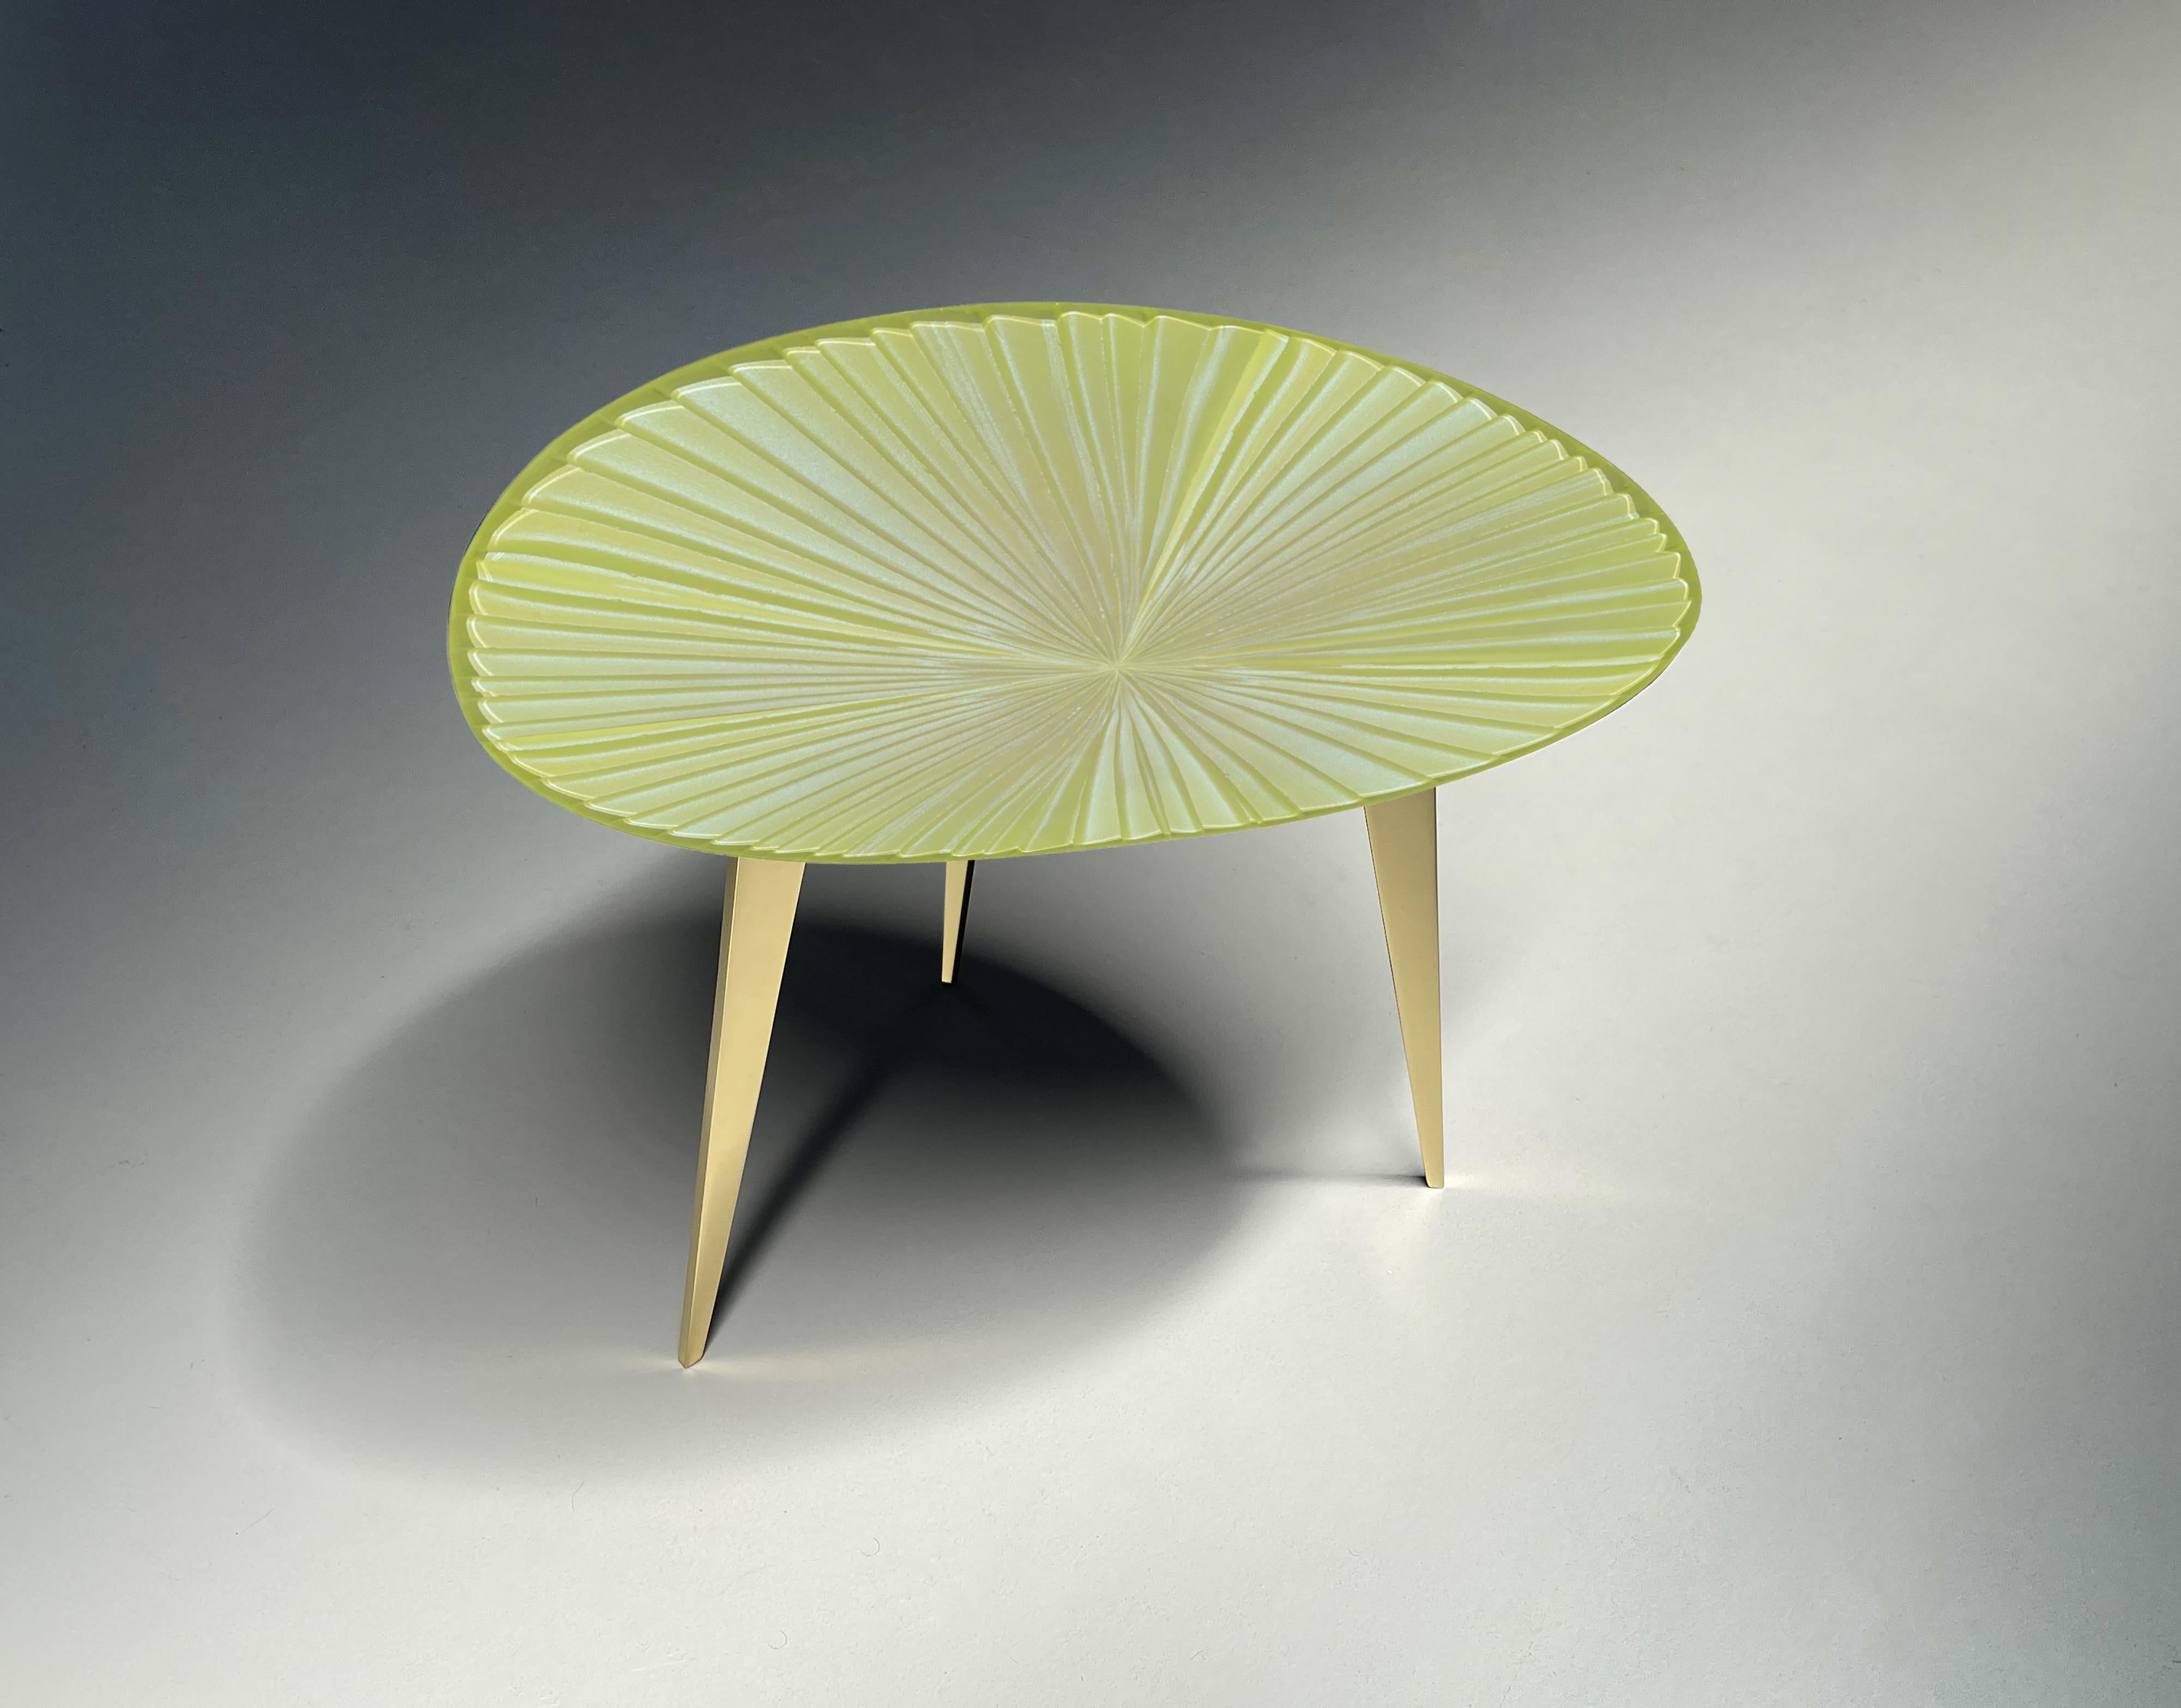 
'Fluo' est une table basse originale conçue pour enrichir un salon avec du style, de l'unicité et de la couleur.
L'ensemble de la structure de soutien est en laiton. Les pieds ont une finition en laiton poli tandis que la plaque inférieure est